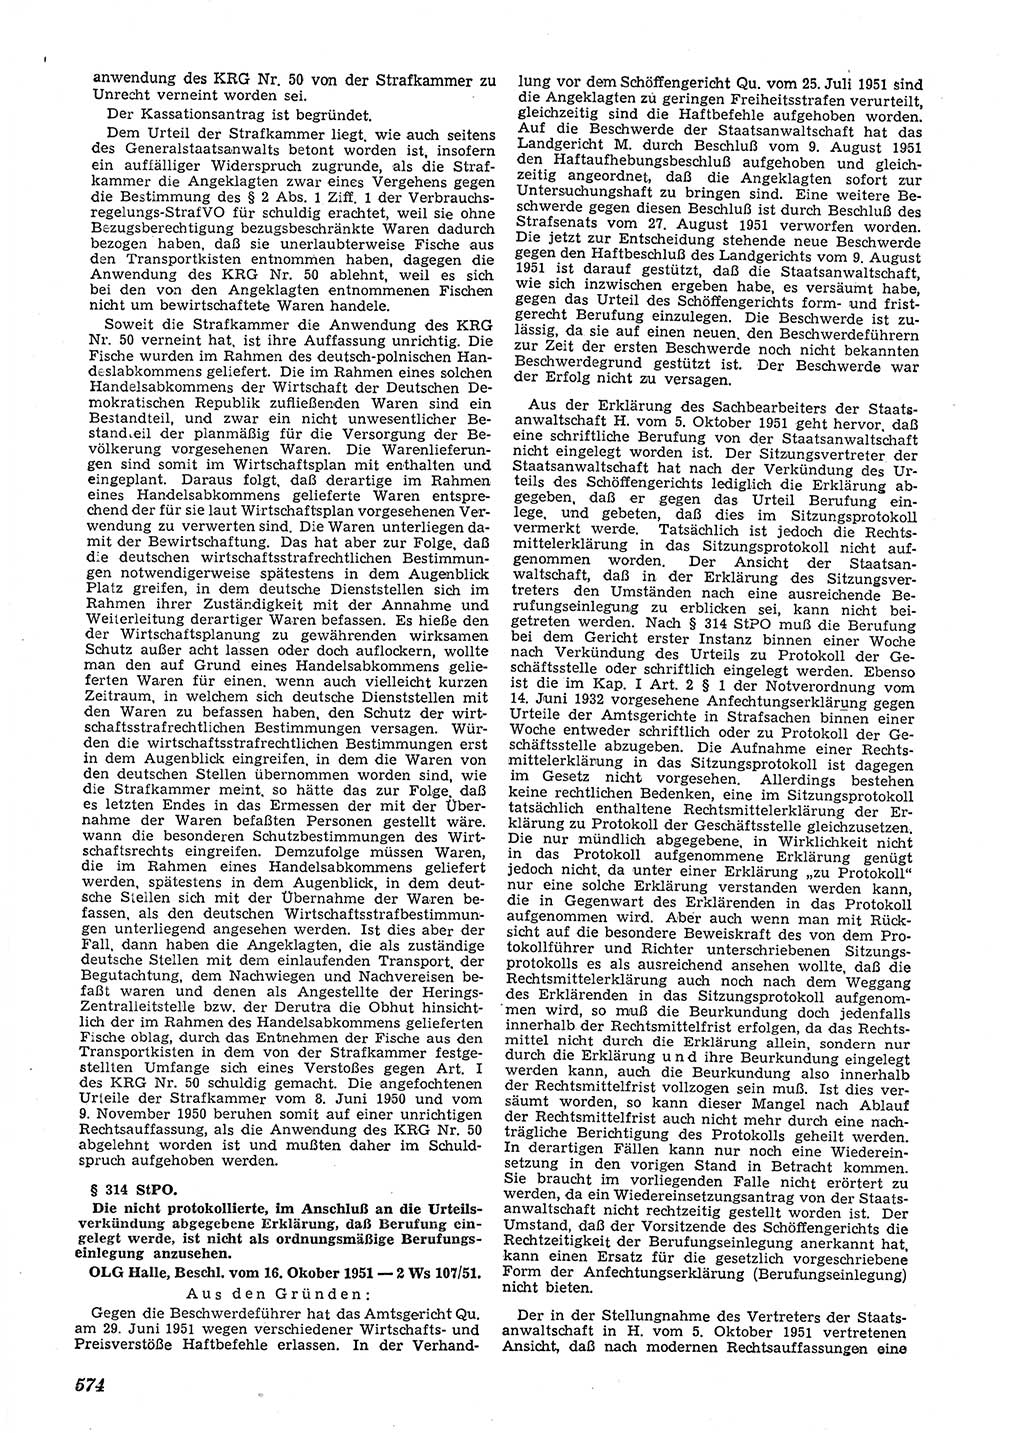 Neue Justiz (NJ), Zeitschrift für Recht und Rechtswissenschaft [Deutsche Demokratische Republik (DDR)], 5. Jahrgang 1951, Seite 574 (NJ DDR 1951, S. 574)